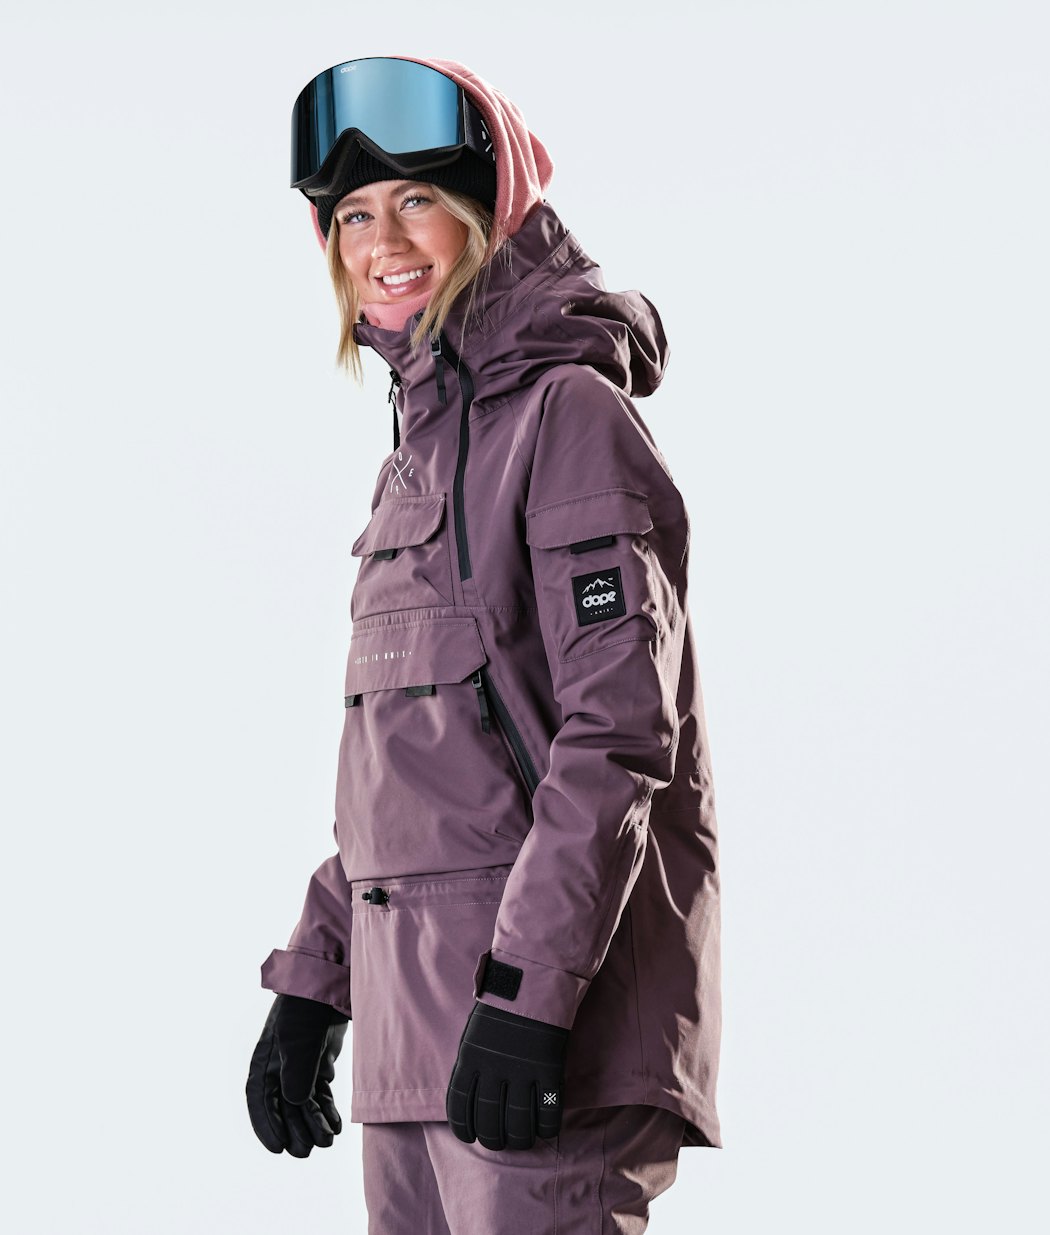 Akin W 2020 Snowboard Jacket Women Faded Grape Renewed